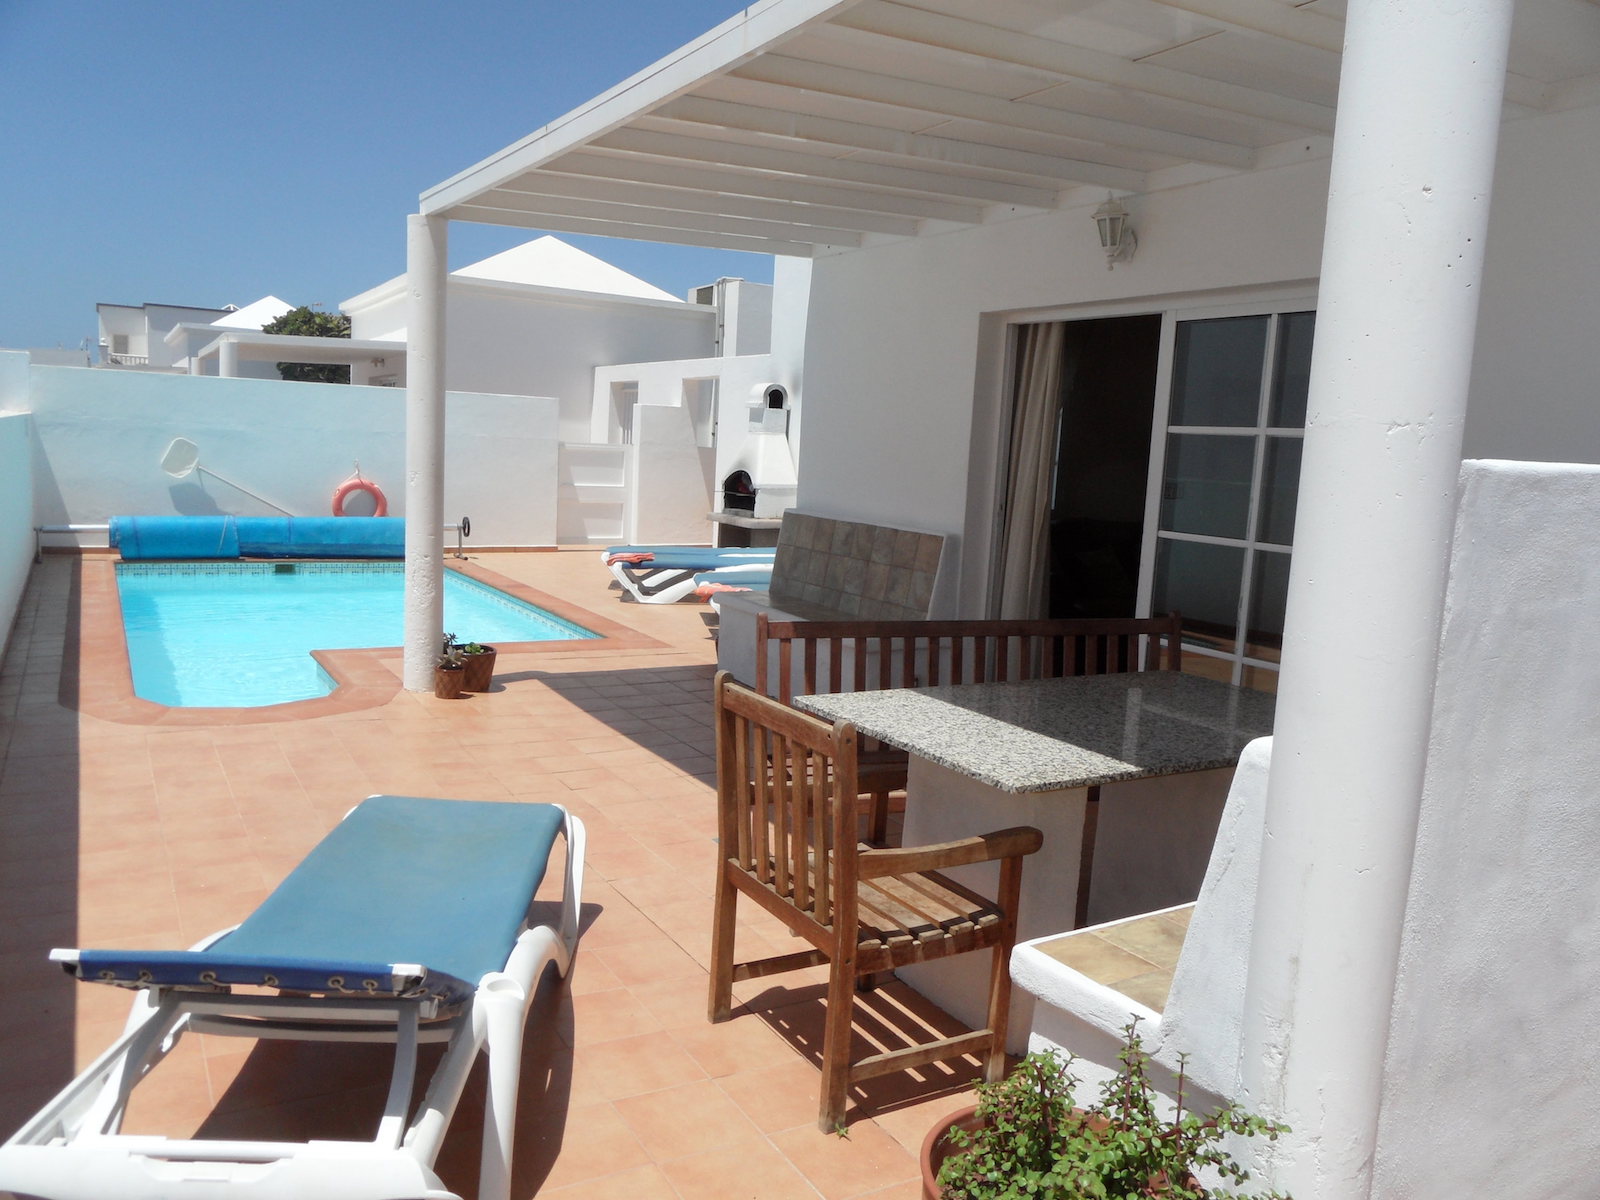 3 Bedroom Private Villa Las Calas with Heated Pool